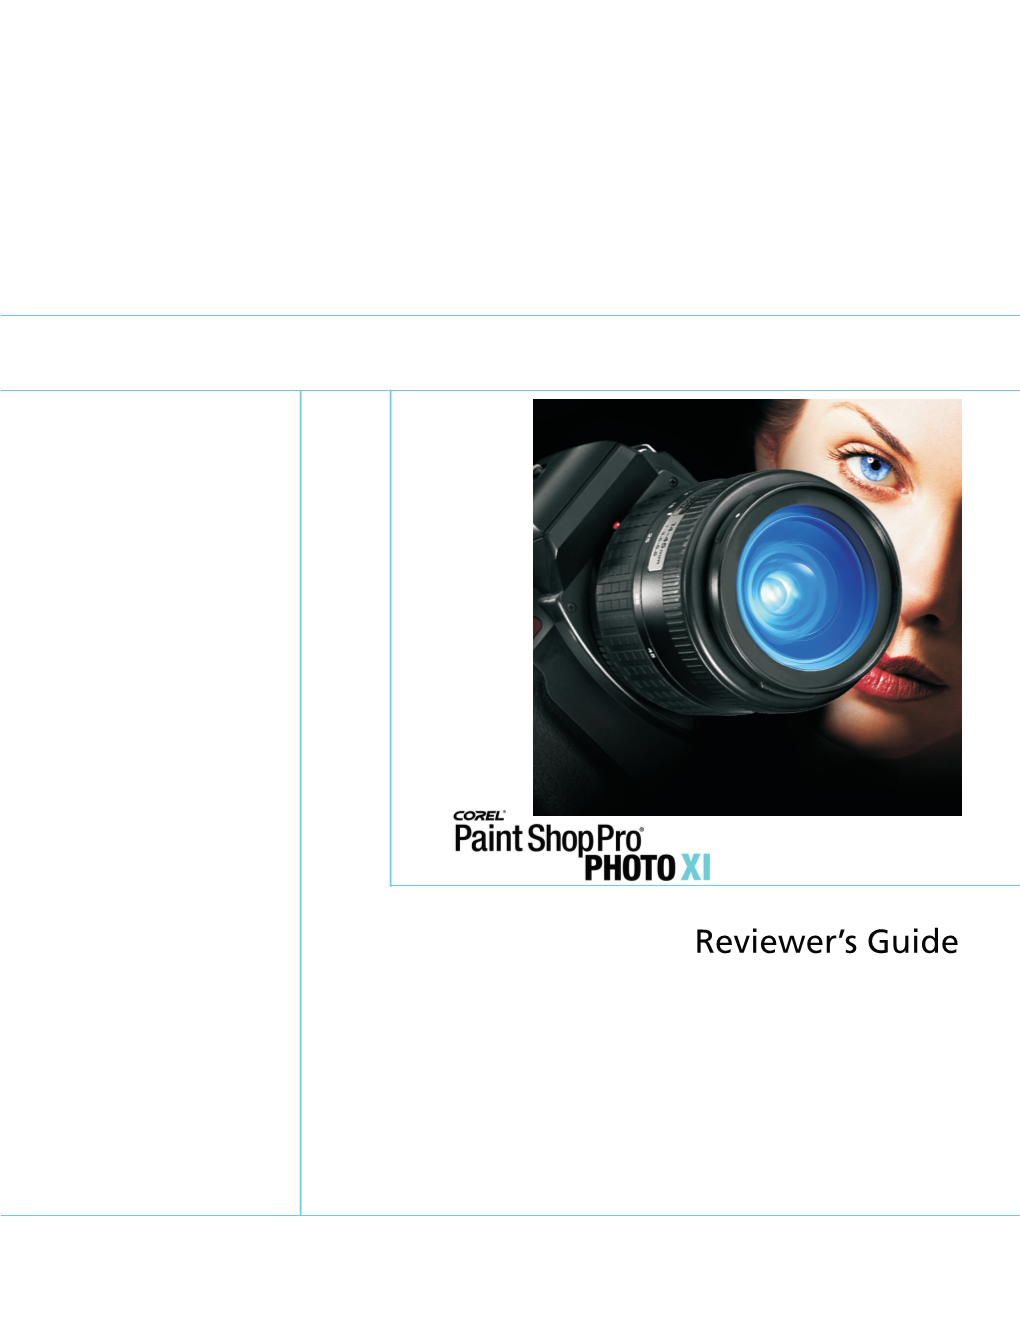 Corel Paint Shop Pro Photo XI Reviewer's Guide